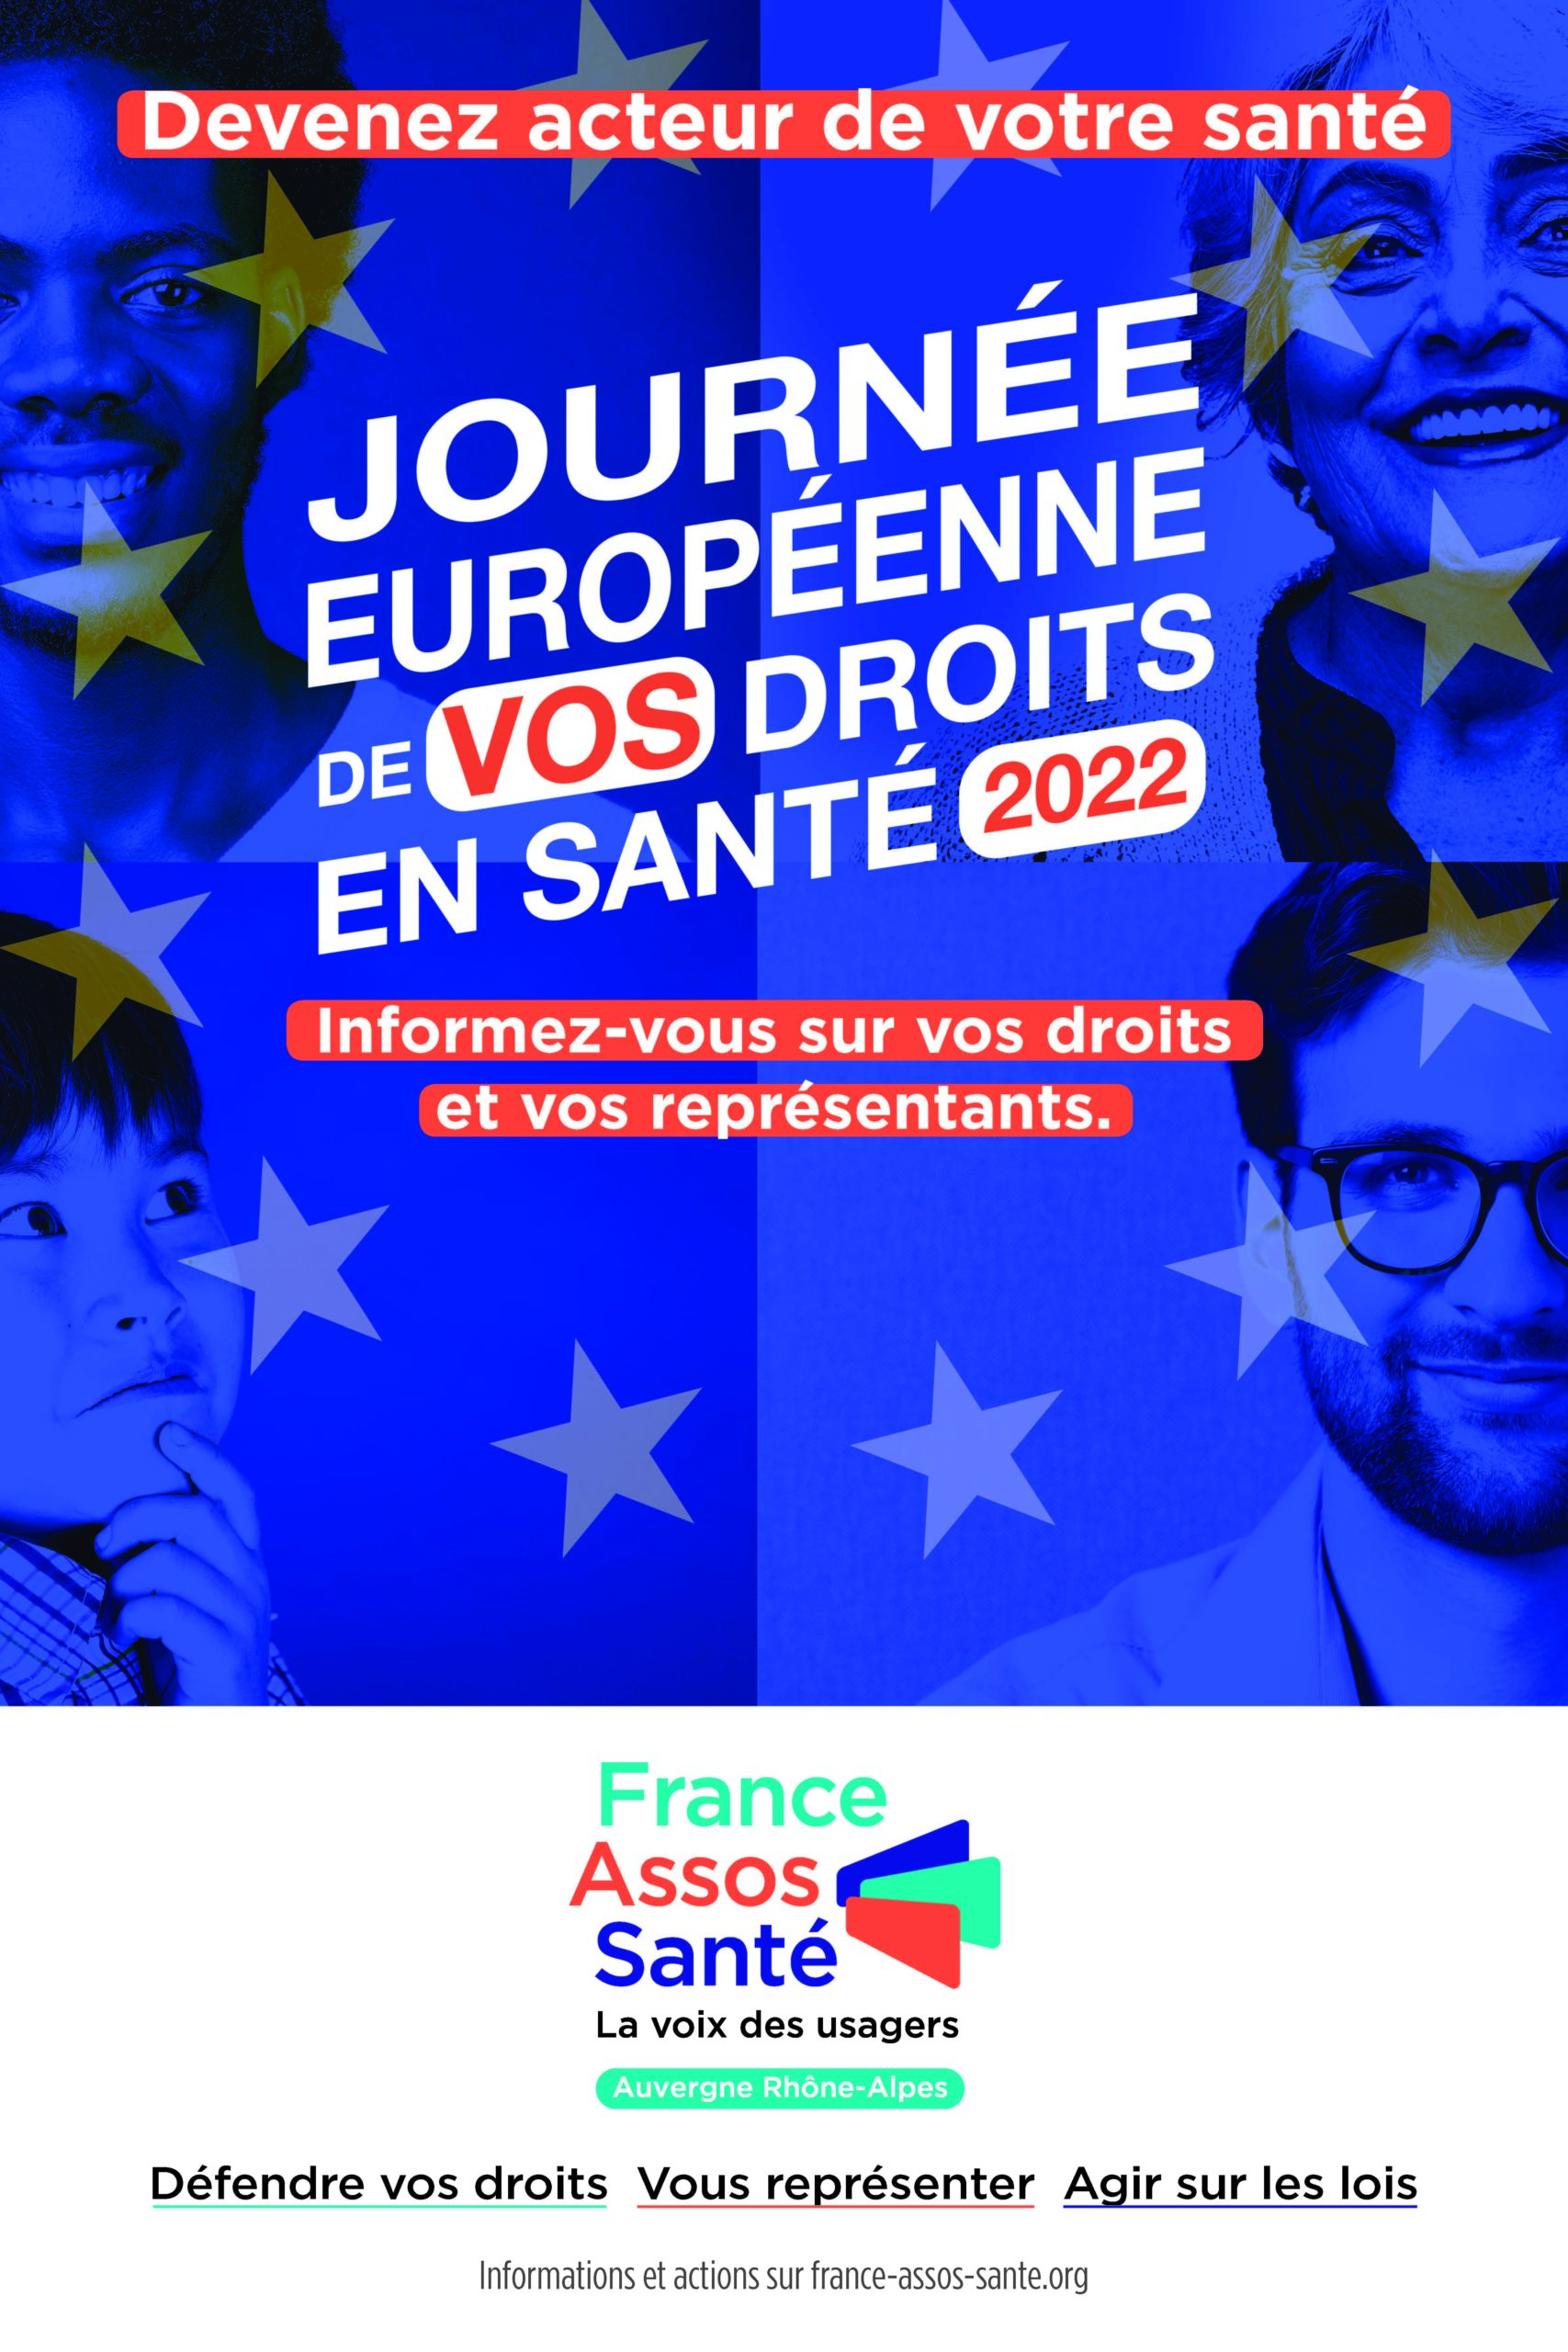 Journée Européenne de vos droits en santé